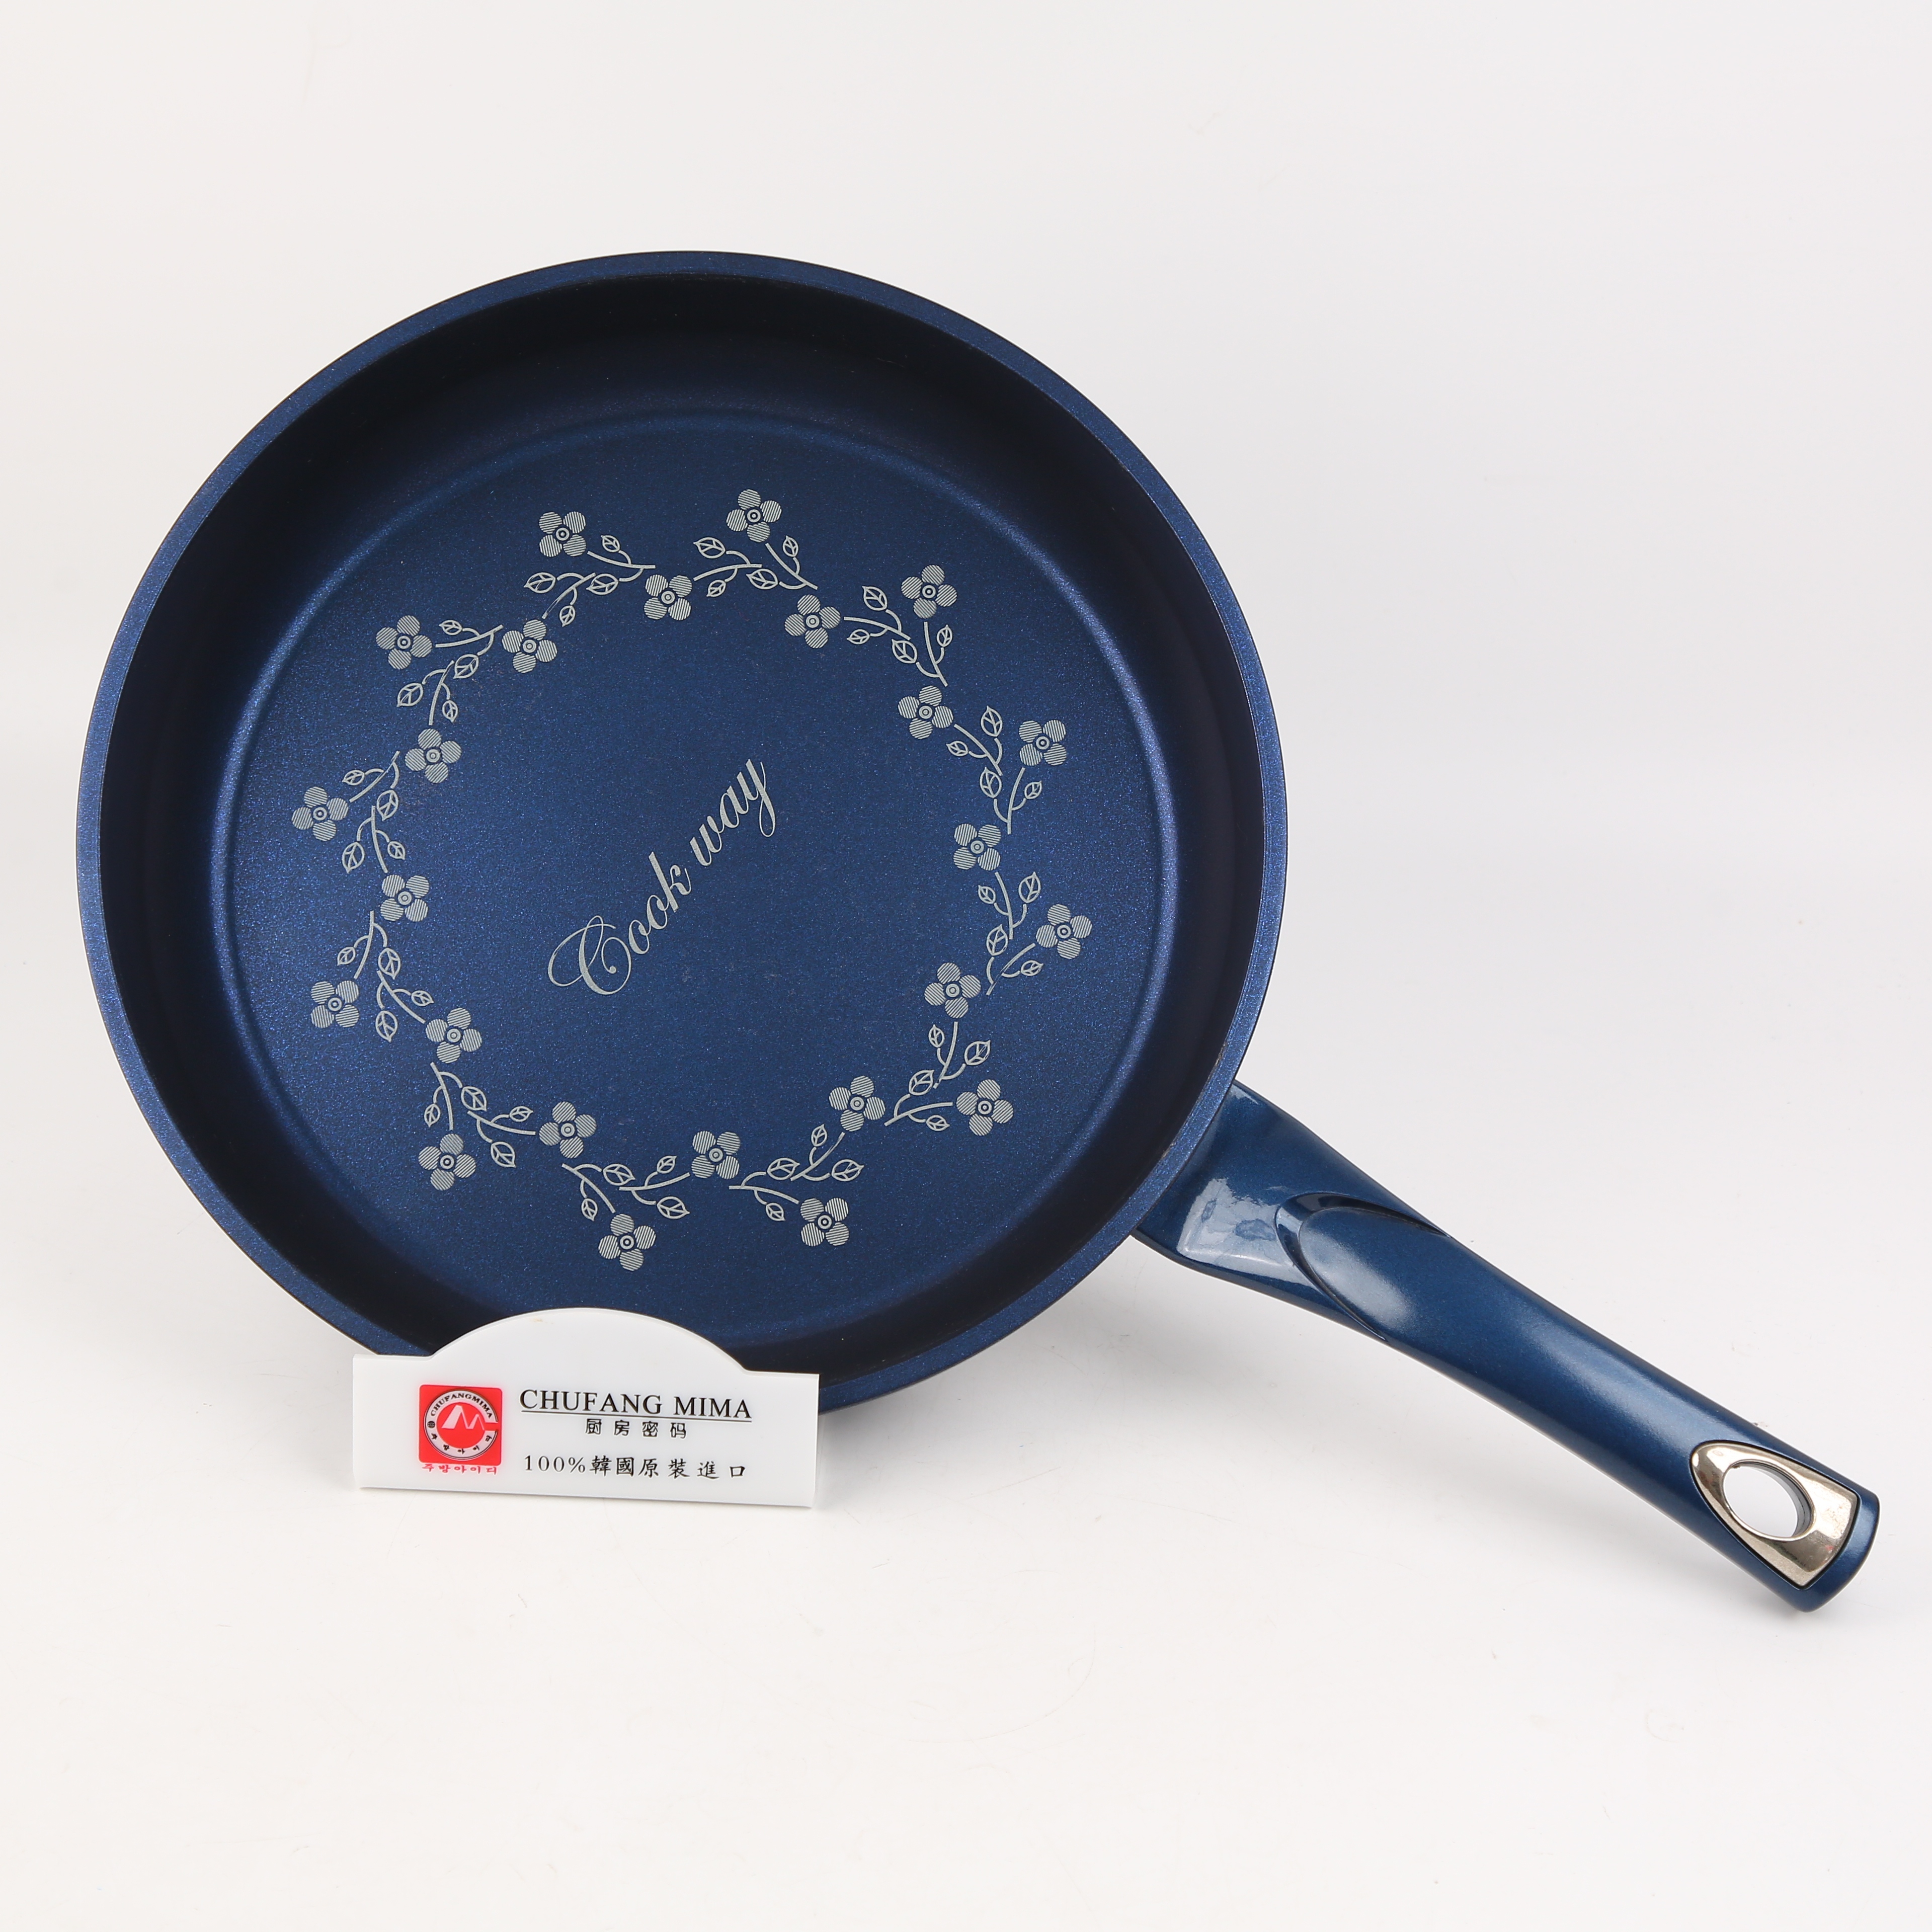 厨房密码 韩国原装进口 蓝色钻石单柄煎锅30cm图